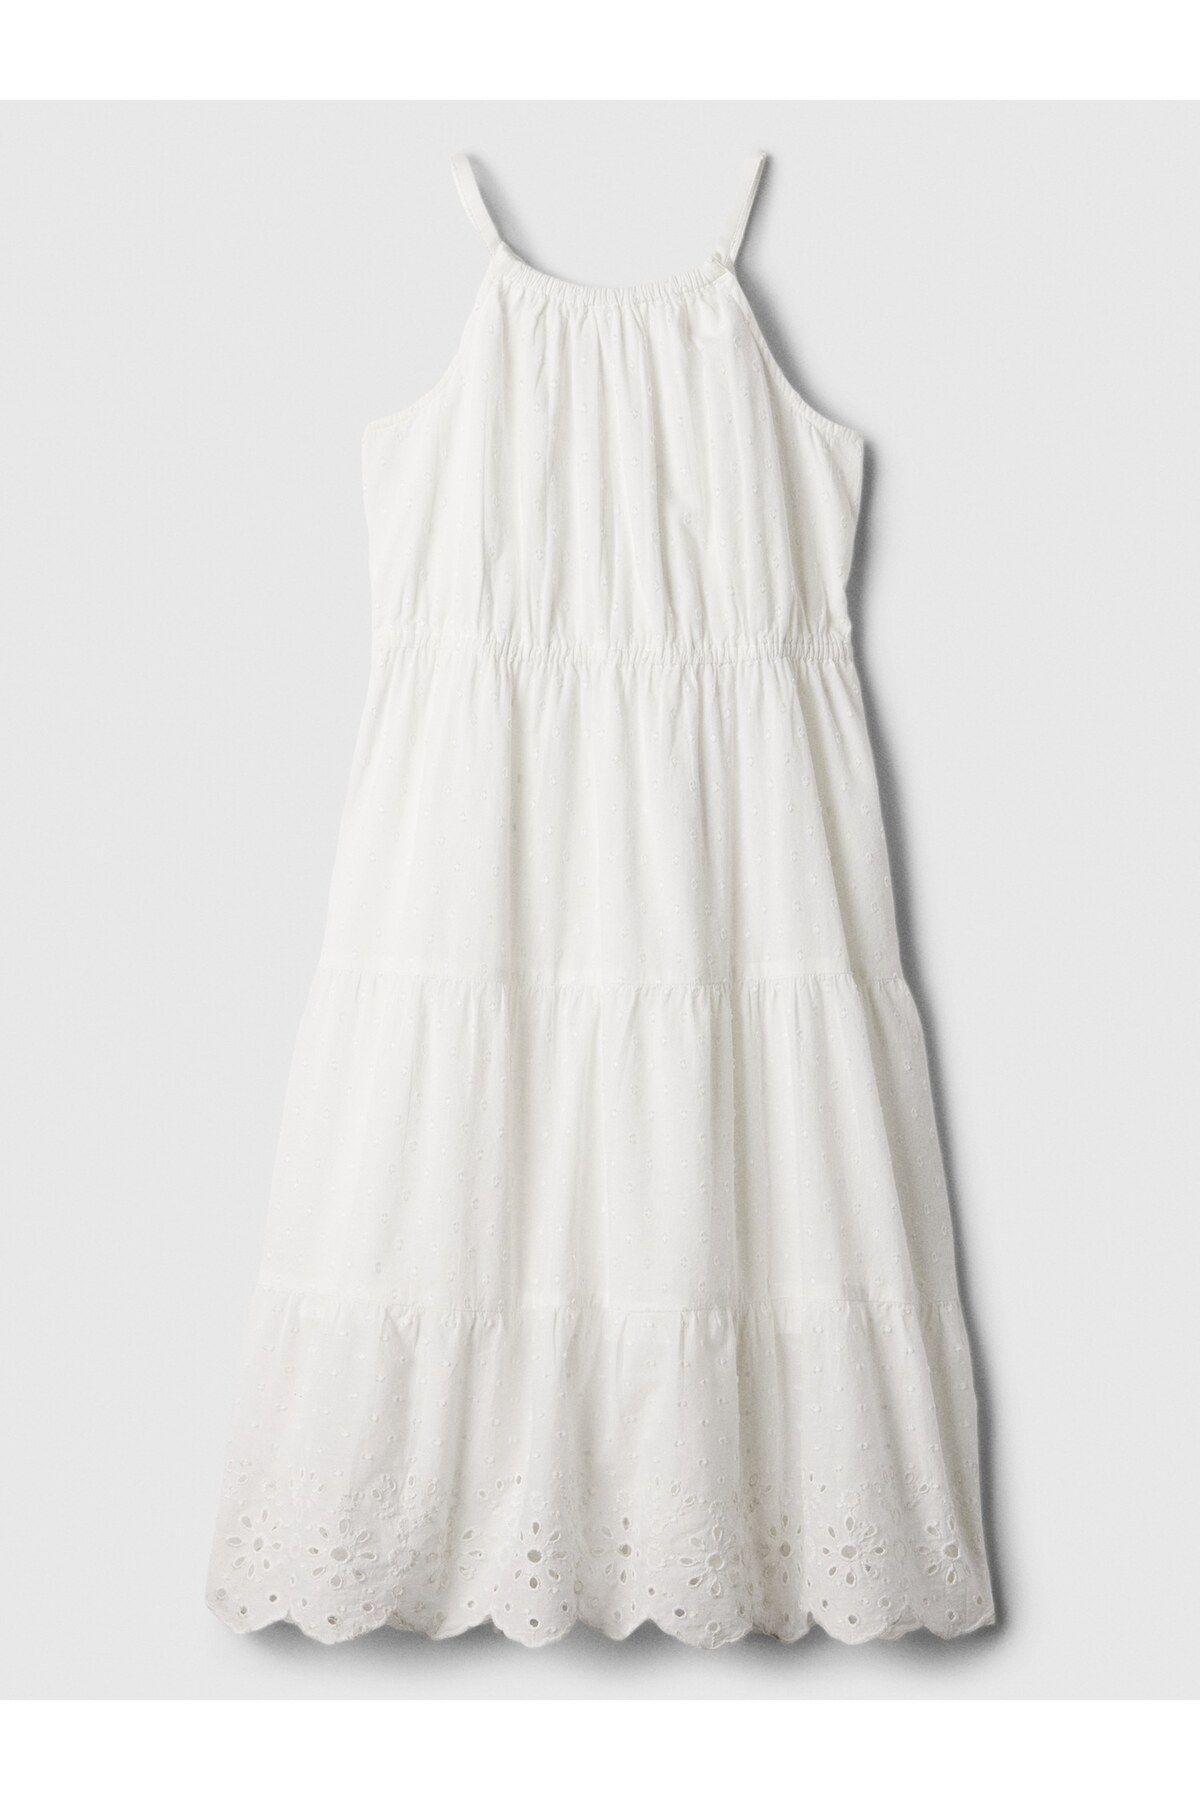 GAP Kız Çocuk Kırık Beyaz Halter Yaka Fisto Işlemeli Elbise